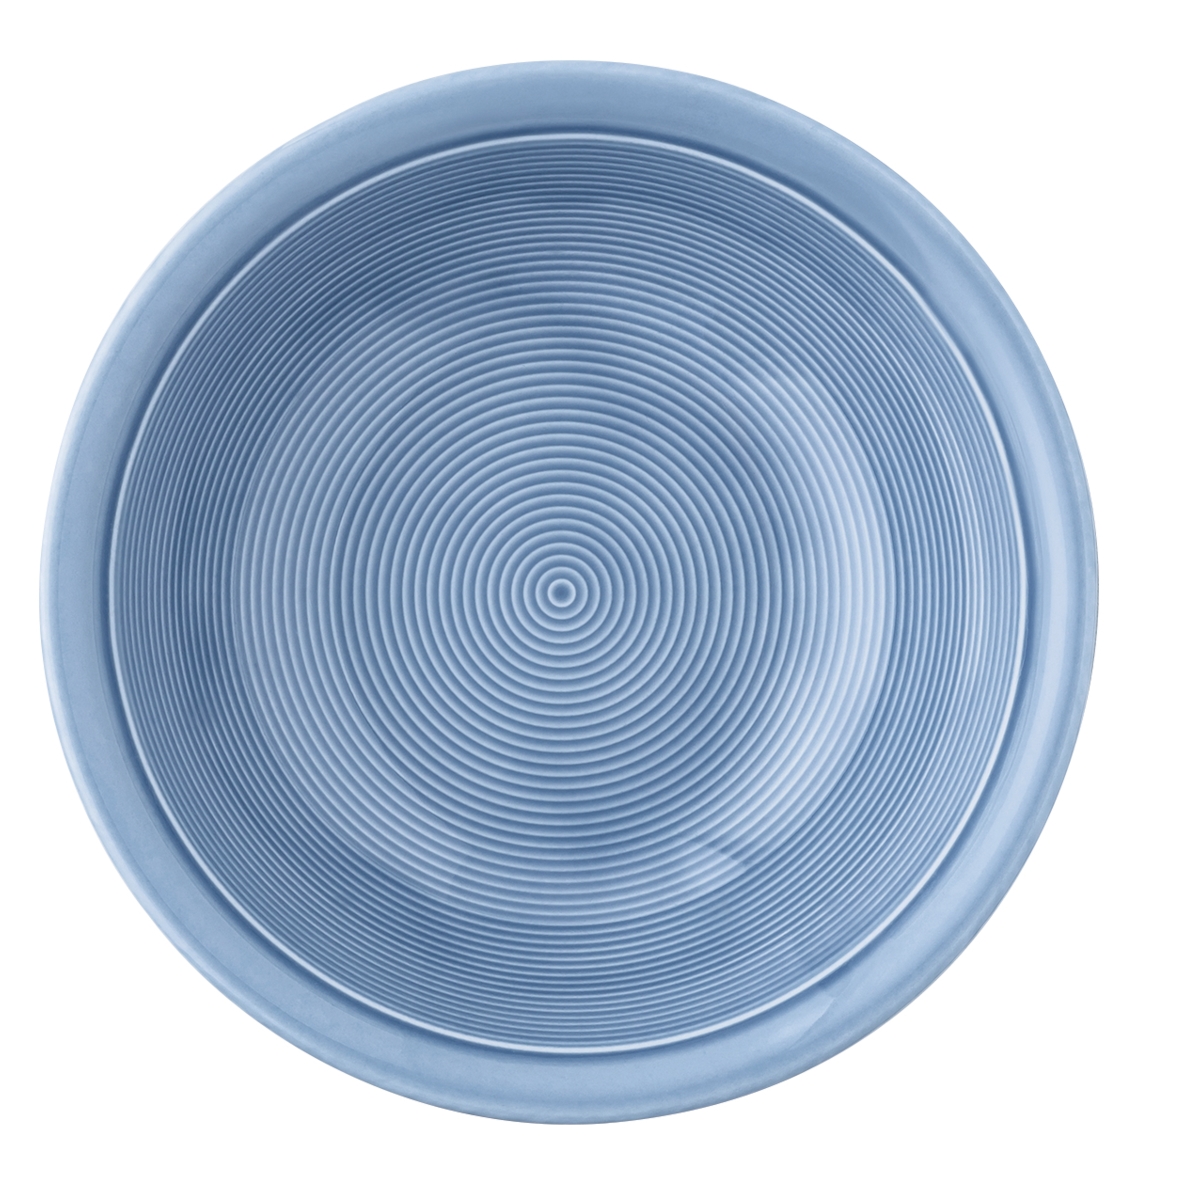 Thomas Trend Colour Arctic Blue Bowl 16 cm